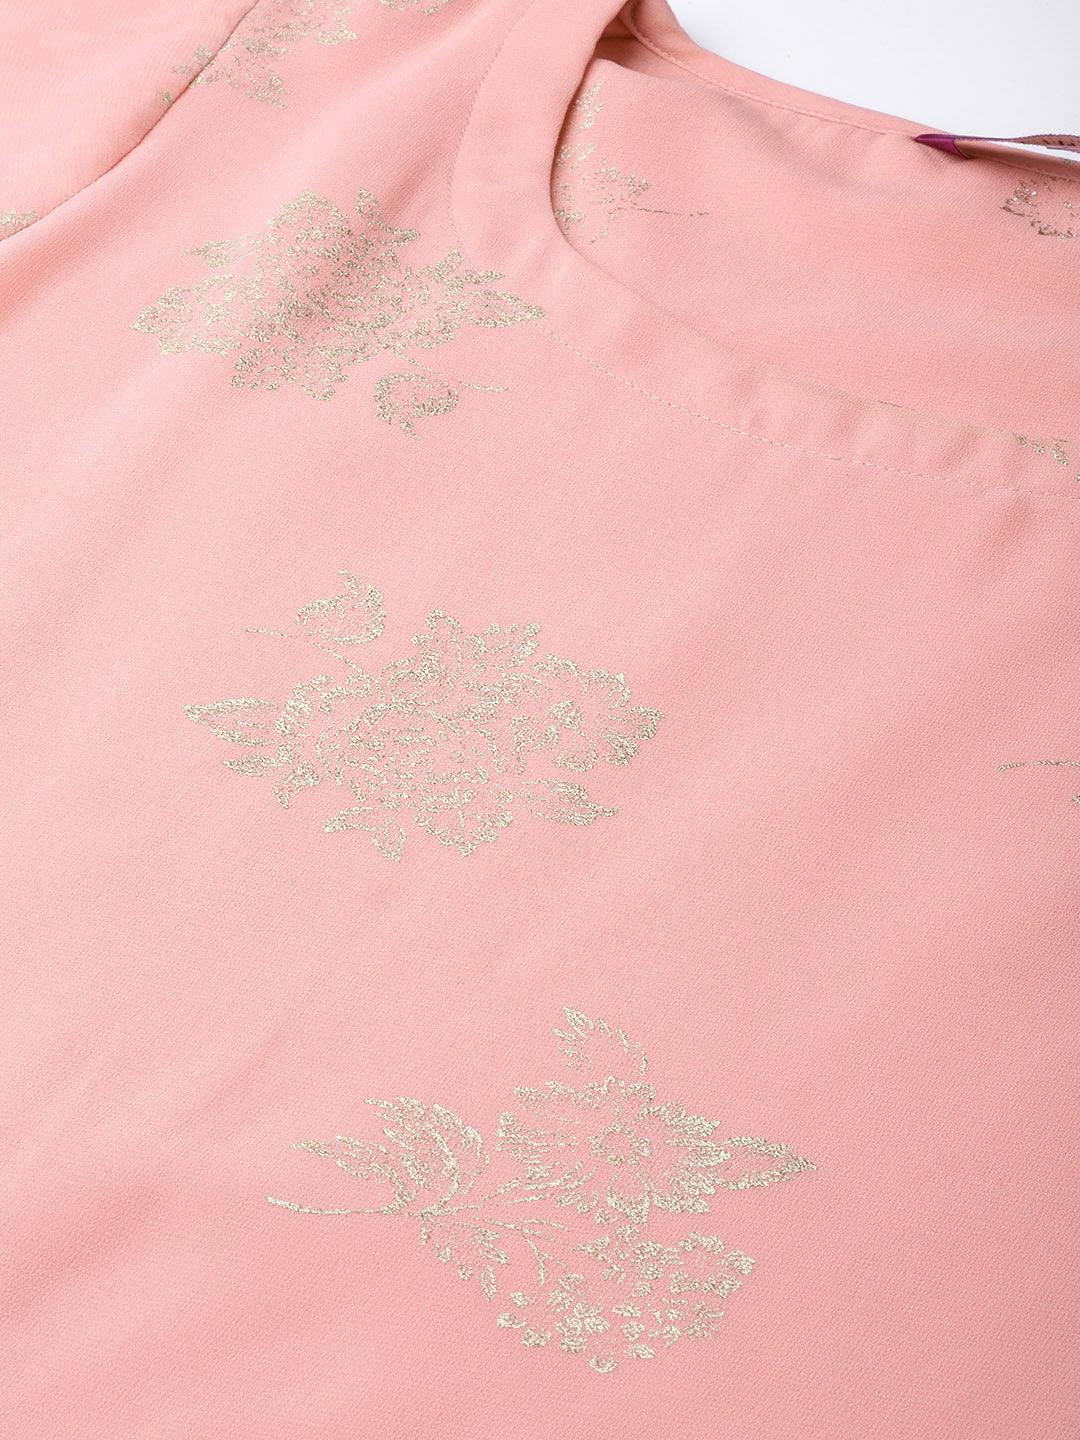 Pink Printed Georgette Suit Set - Libas